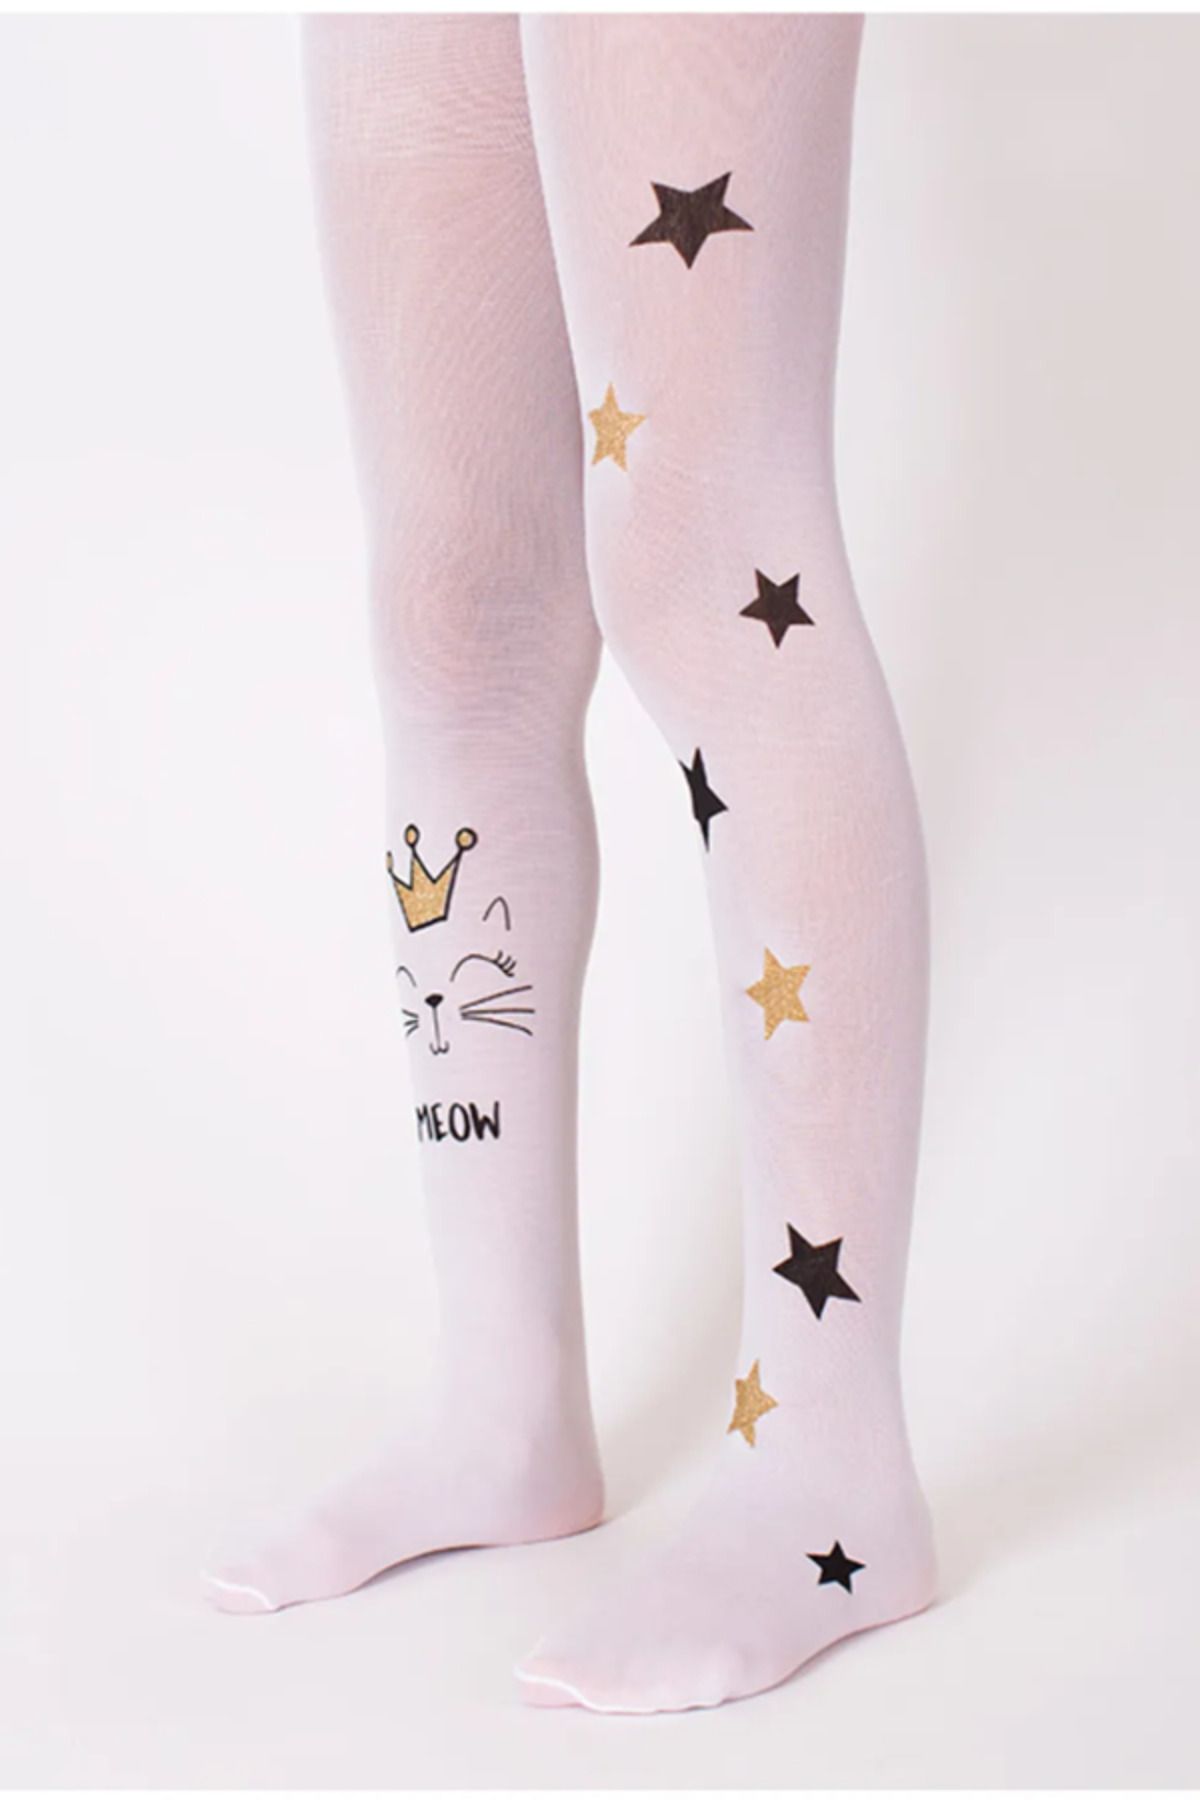 Goose Beyaz Meow Kedi Ve Yıldız Desen Kız Çocuk Külotlu Çorap